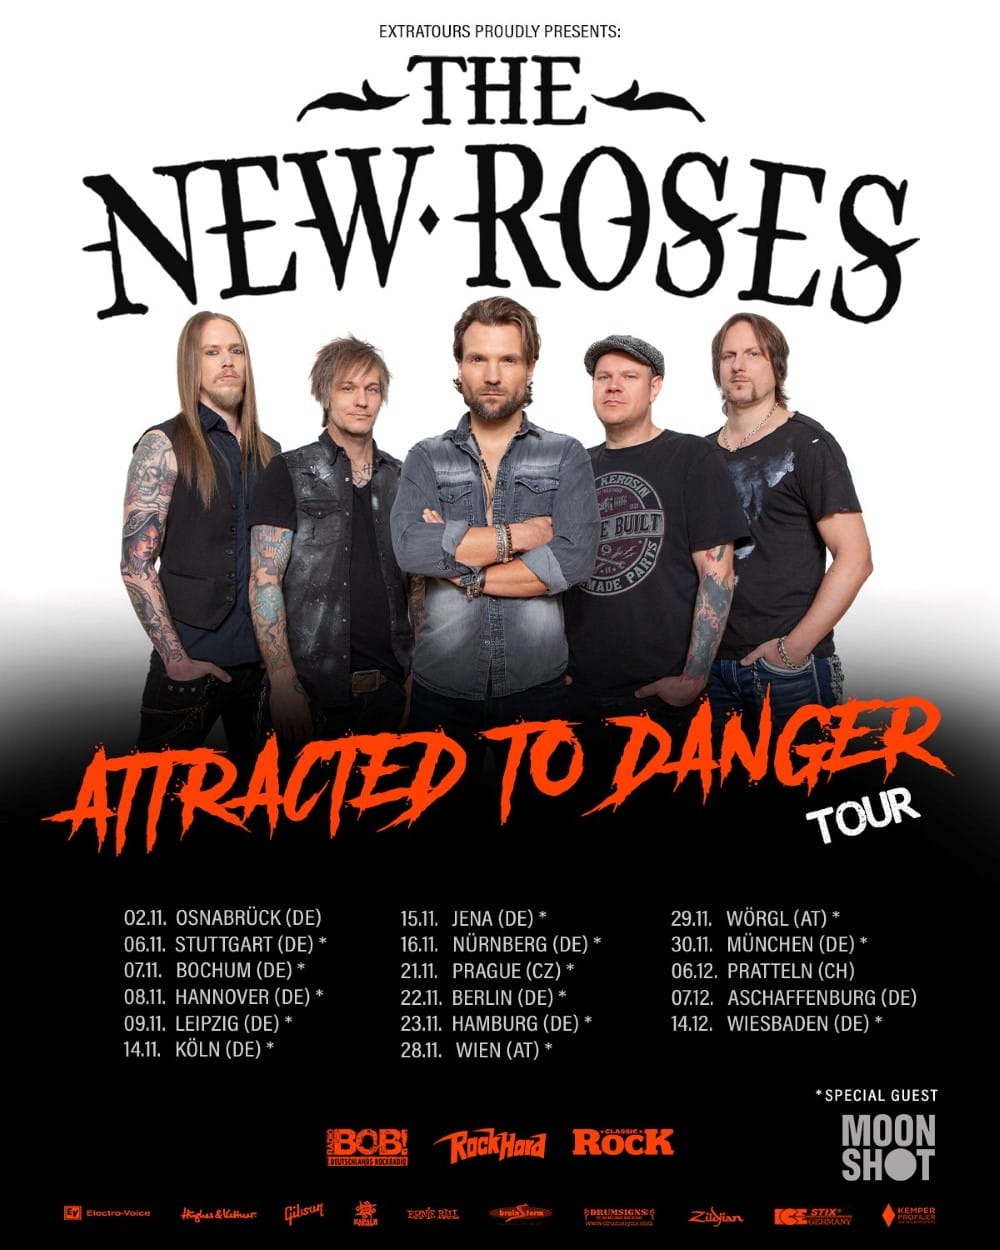 Tourplakat der Band The New Roses mit Logo, Porträt und Terminen für die Tour 2024